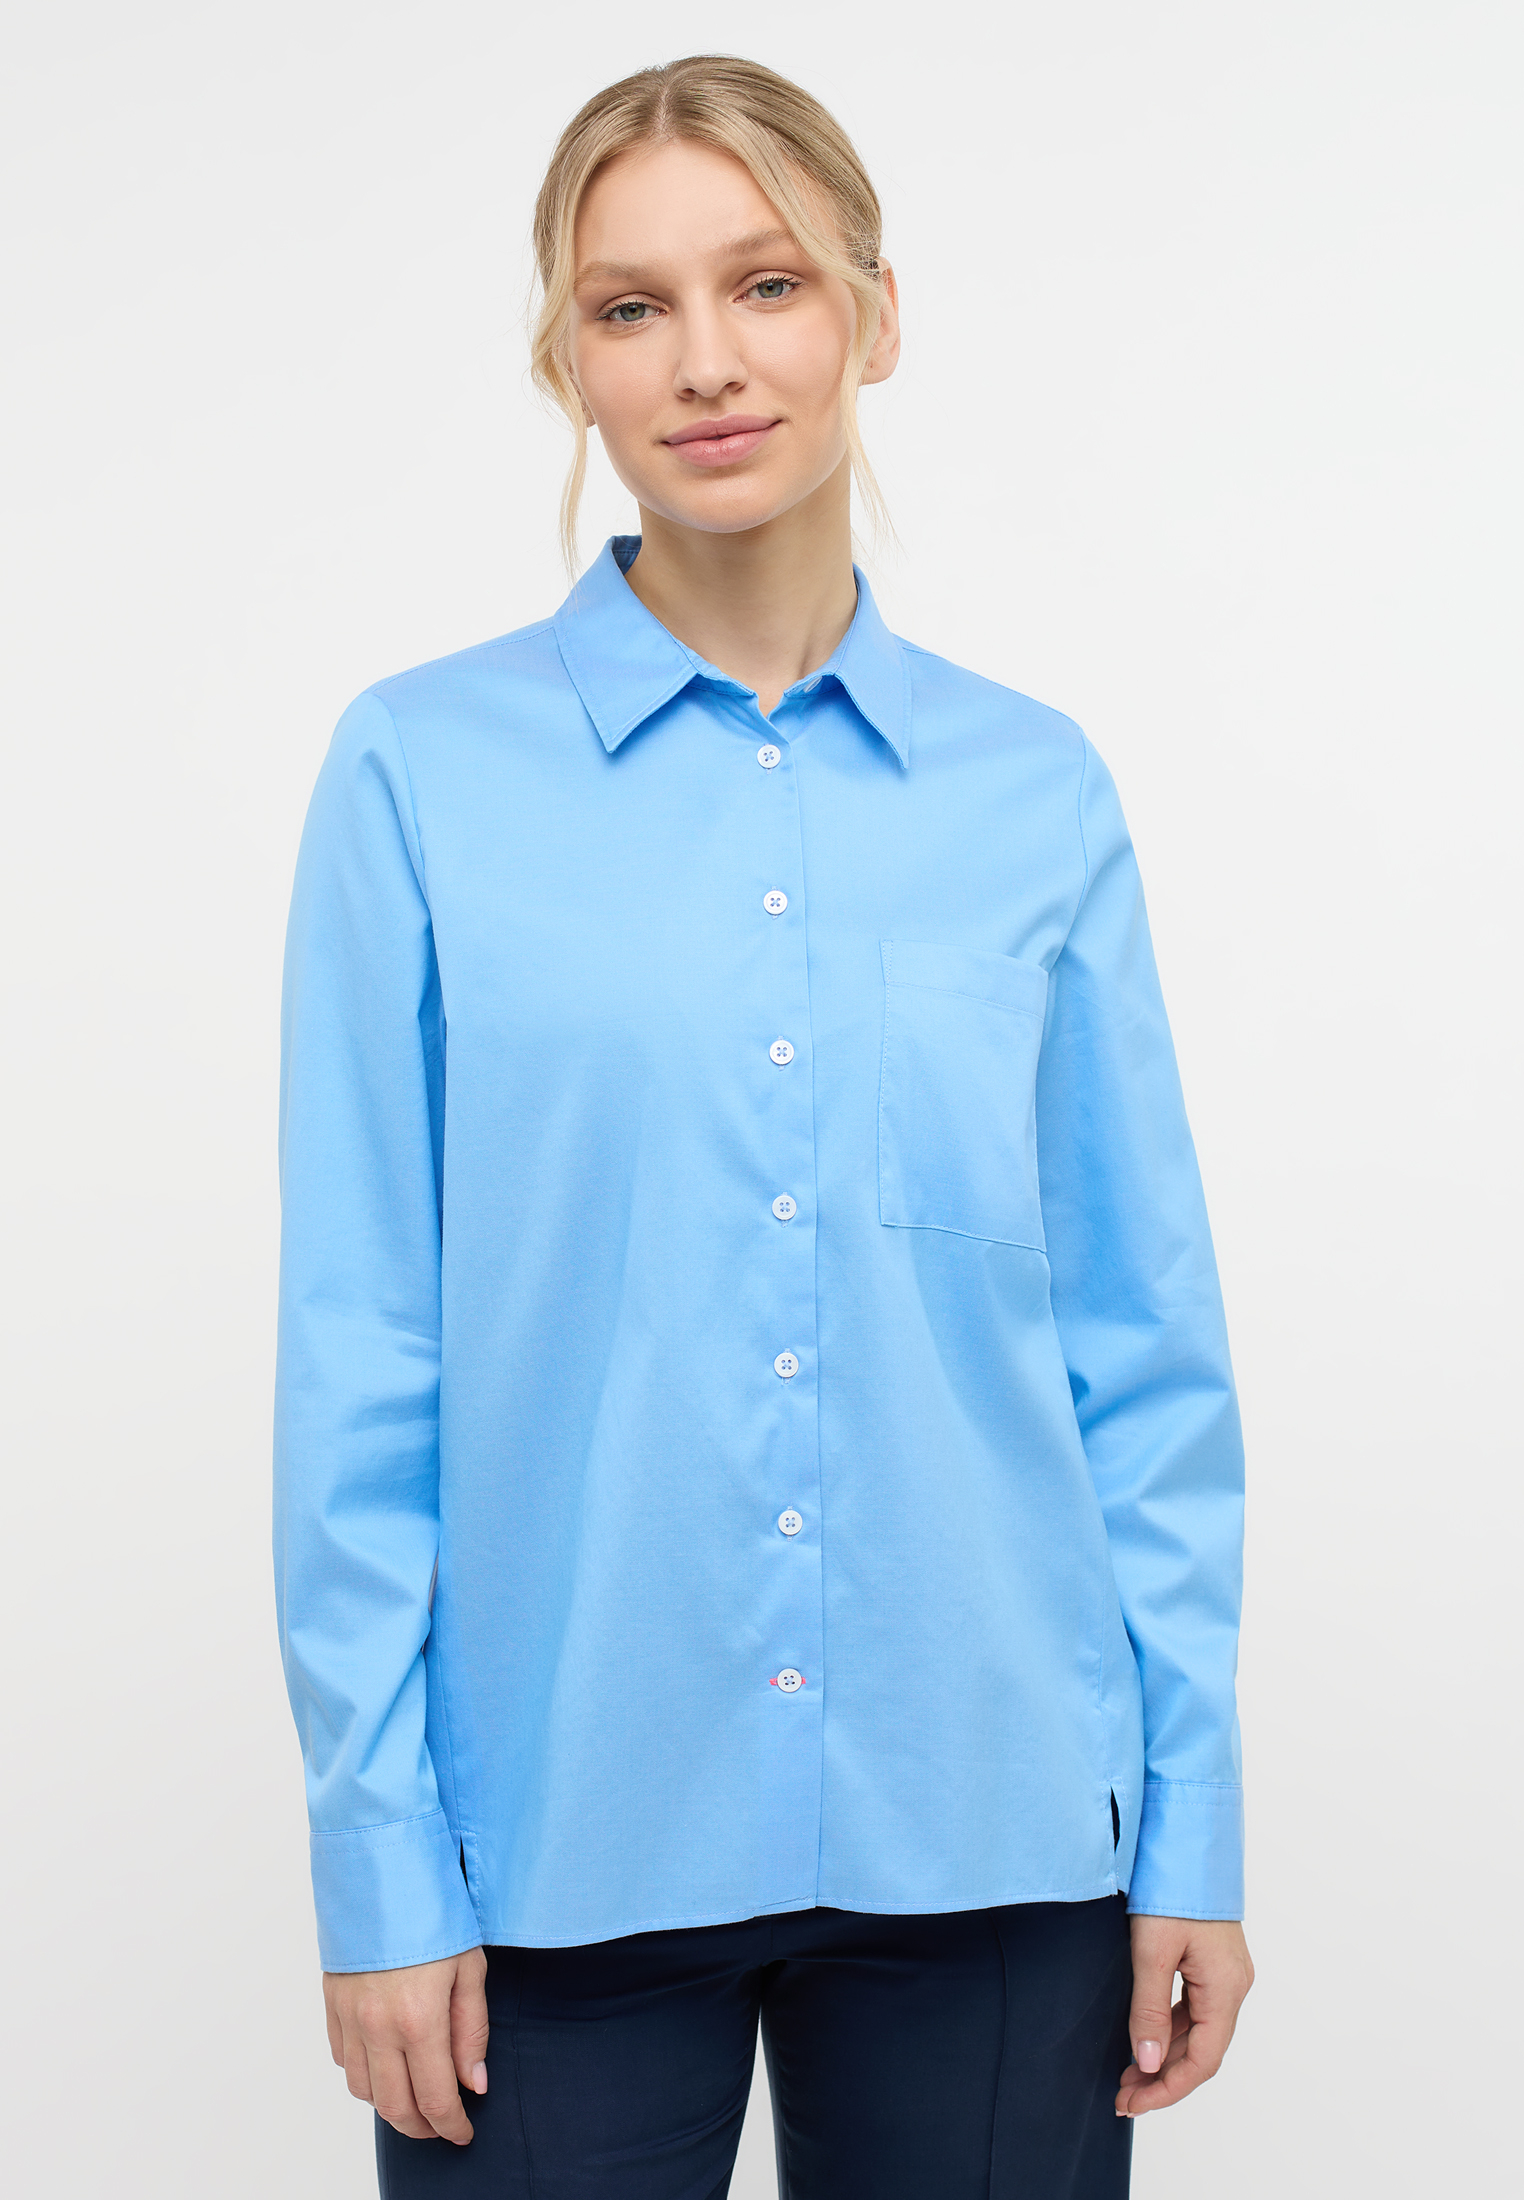 Blusen für Damen günstig kaufen | ETERNA Outlet